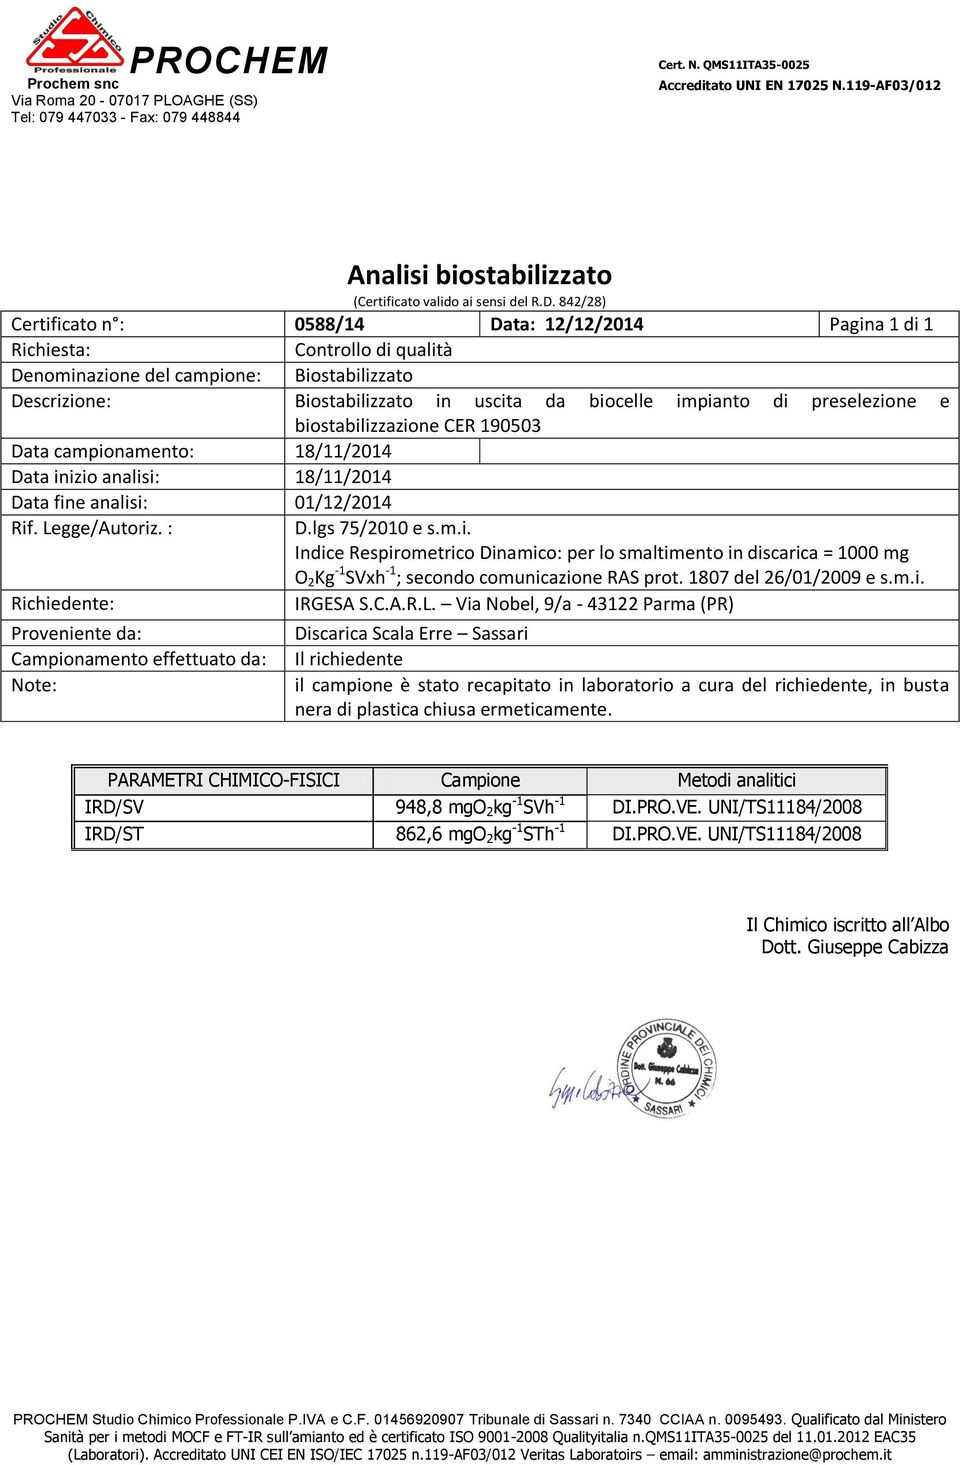 842/28) Certificato n : 0588/14 Data: 12/12/2014 Pagina 1 di 1 Richiesta: Controllo di qualità Denominazione del campione: Biostabilizzato Descrizione: Biostabilizzato in uscita da biocelle impianto